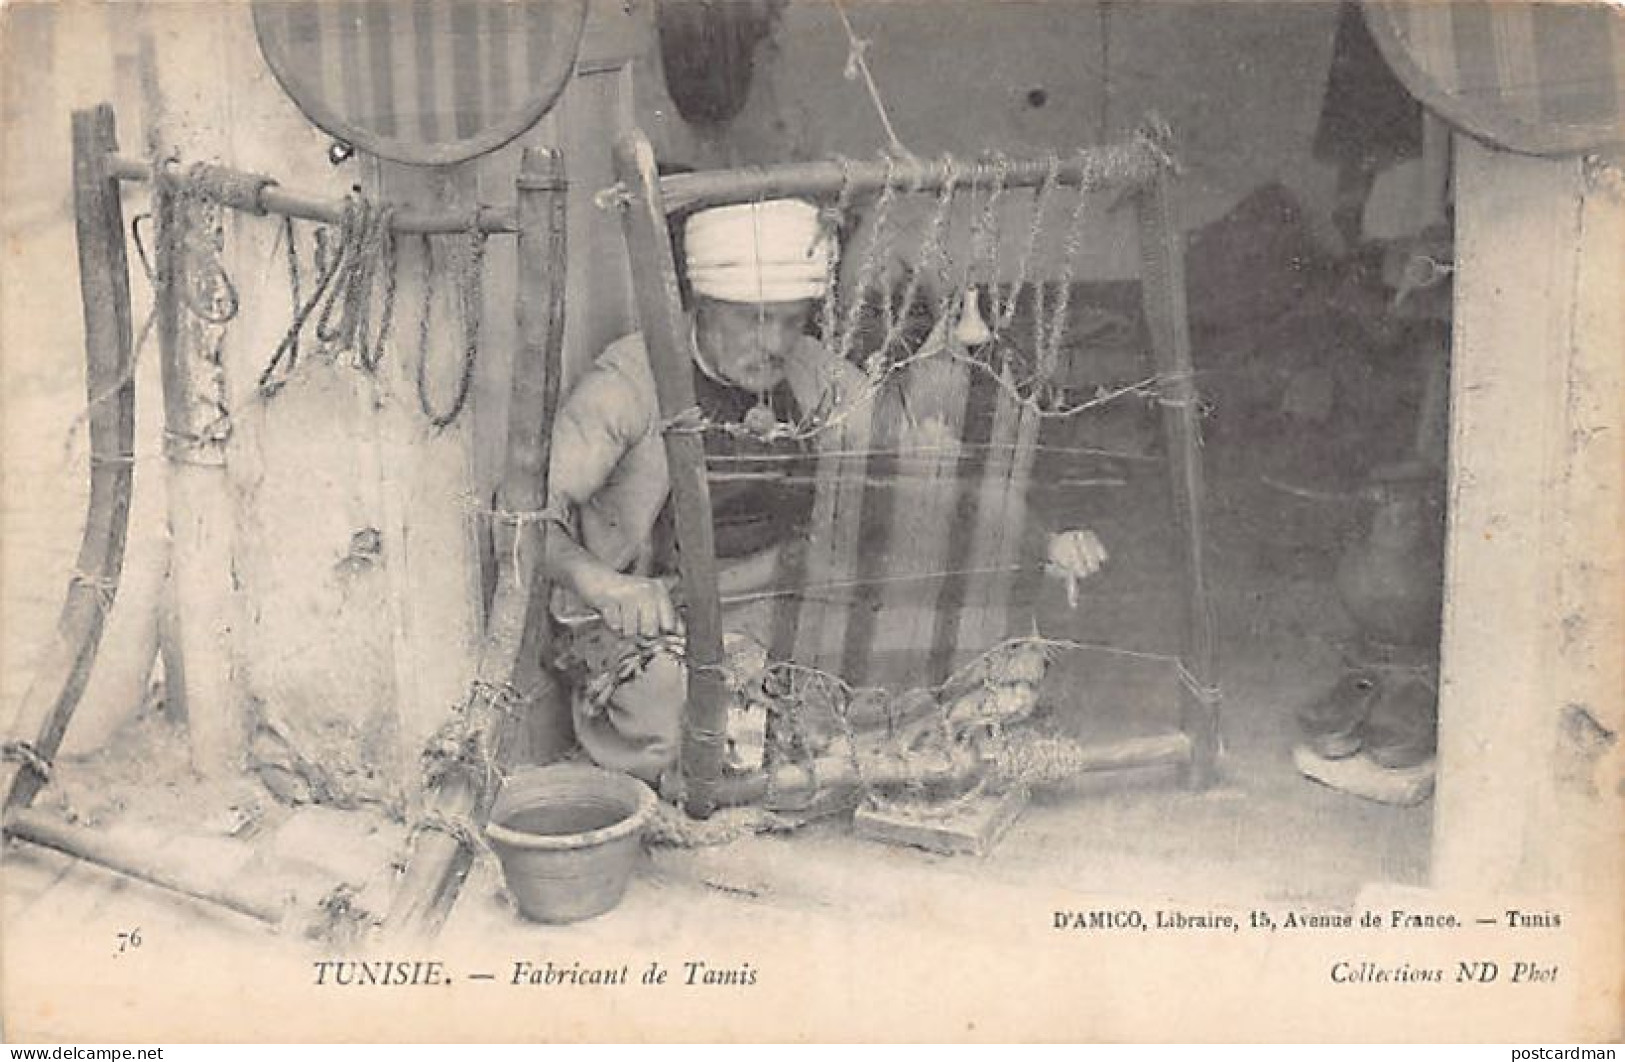 Tunisie - Fabricant De Tamis - Ed. ND Phot. Neurdein 76 D'Amico Libraire - Tunisia